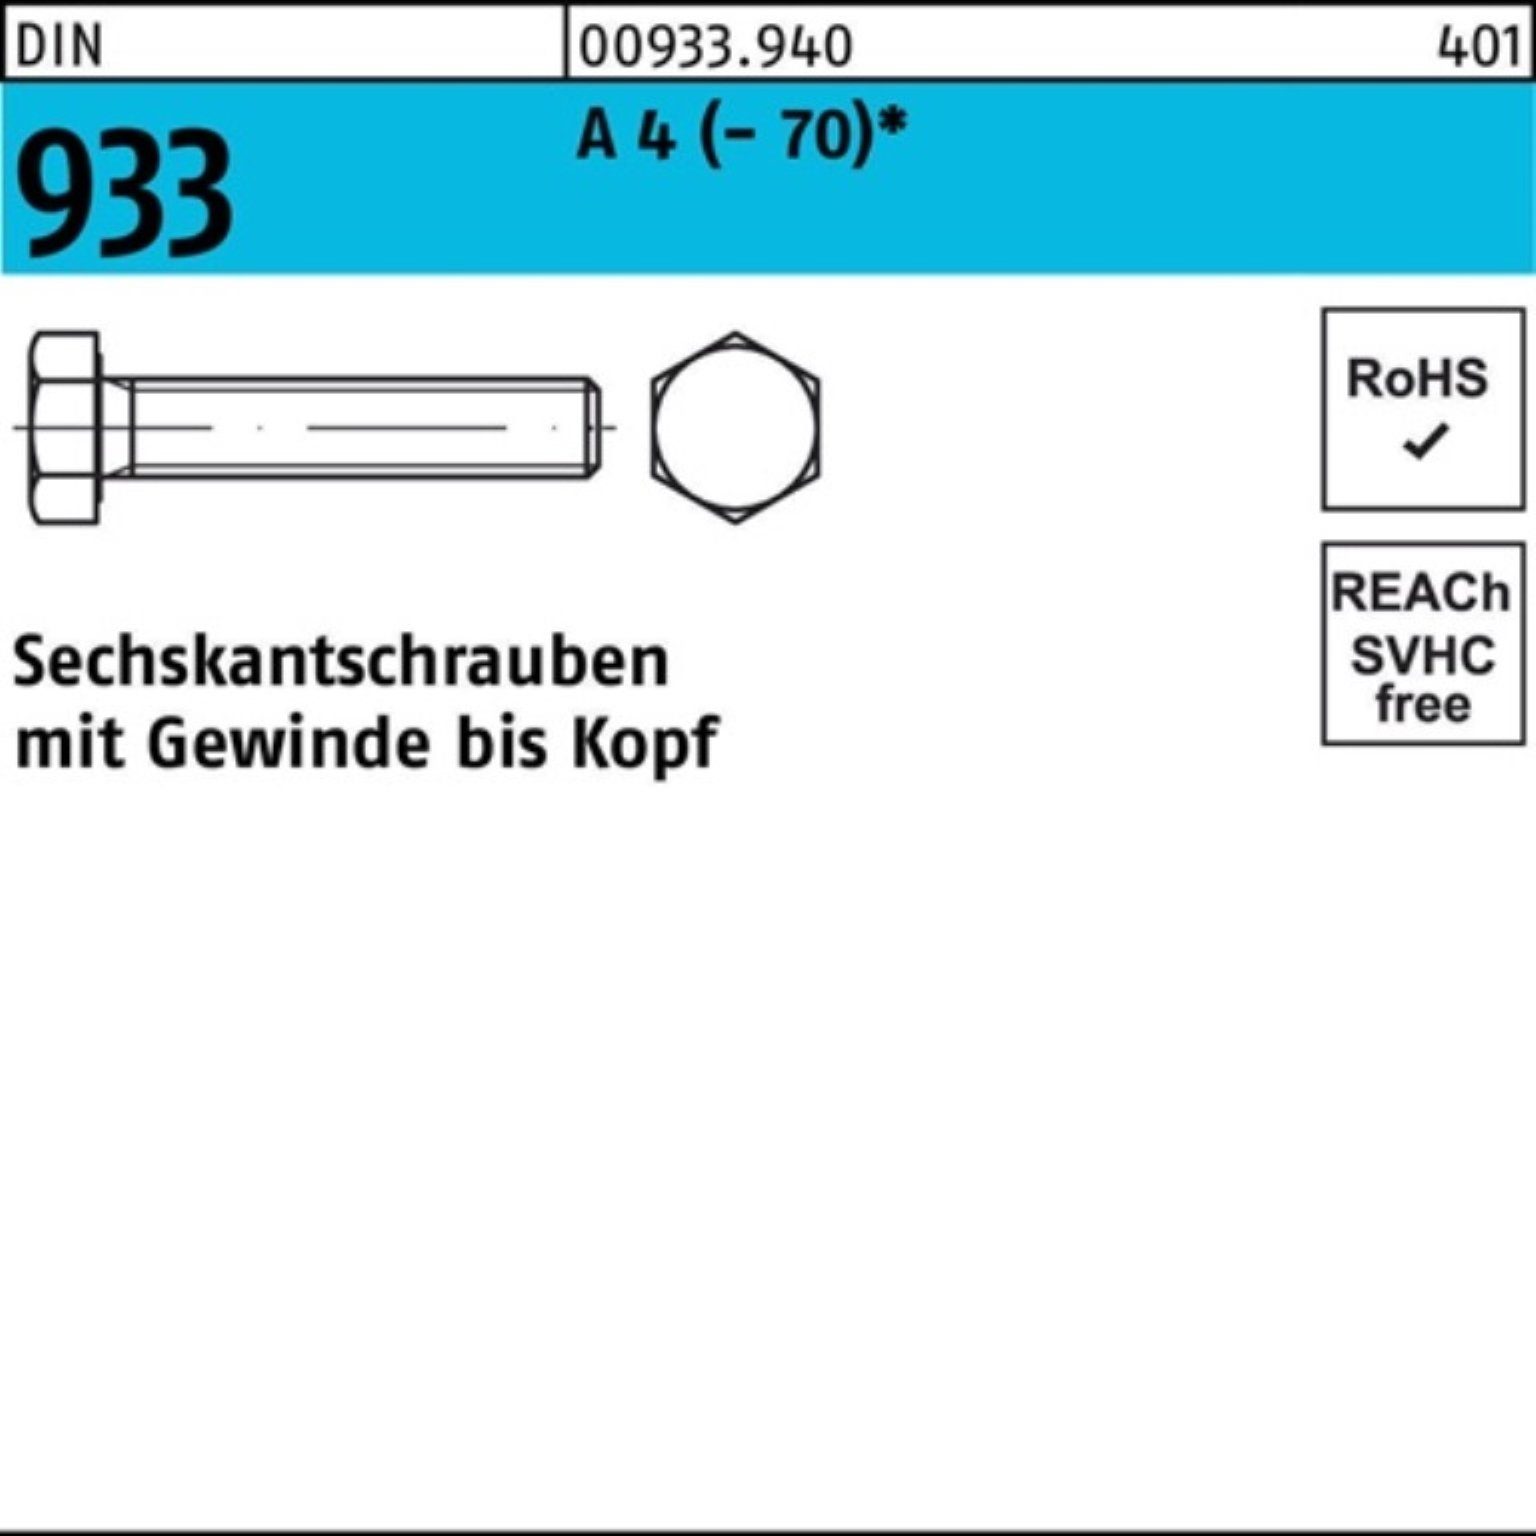 1 VG Sechskantschraube 100er Stück Reyher 933 Sechskantschraube Pack M8x 170 DI DIN (70) A 4